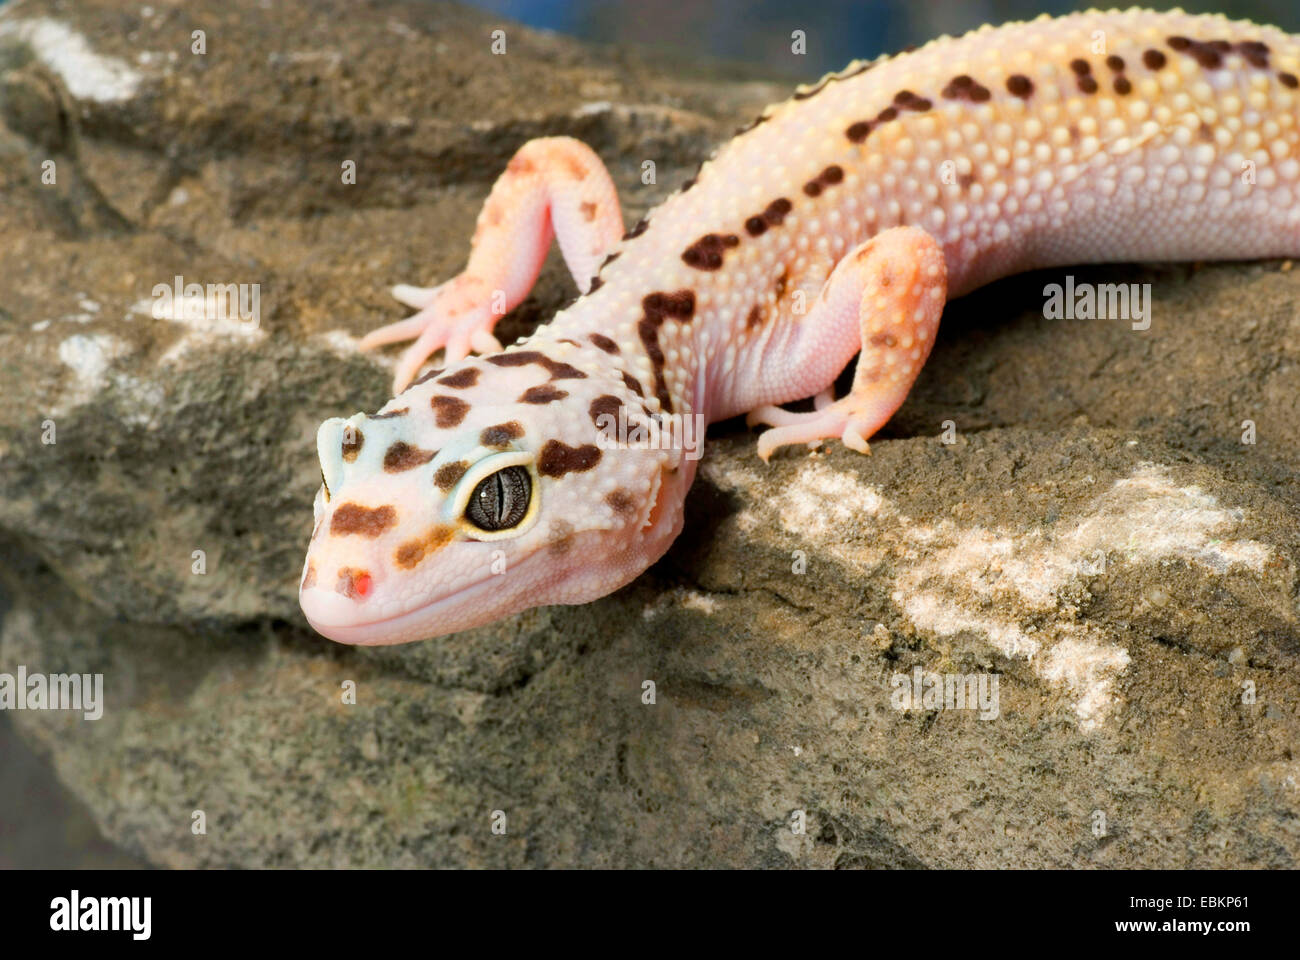 Le gecko léopard (Eublepharis macularius), race rayé chauve assis sur une pierre Banque D'Images